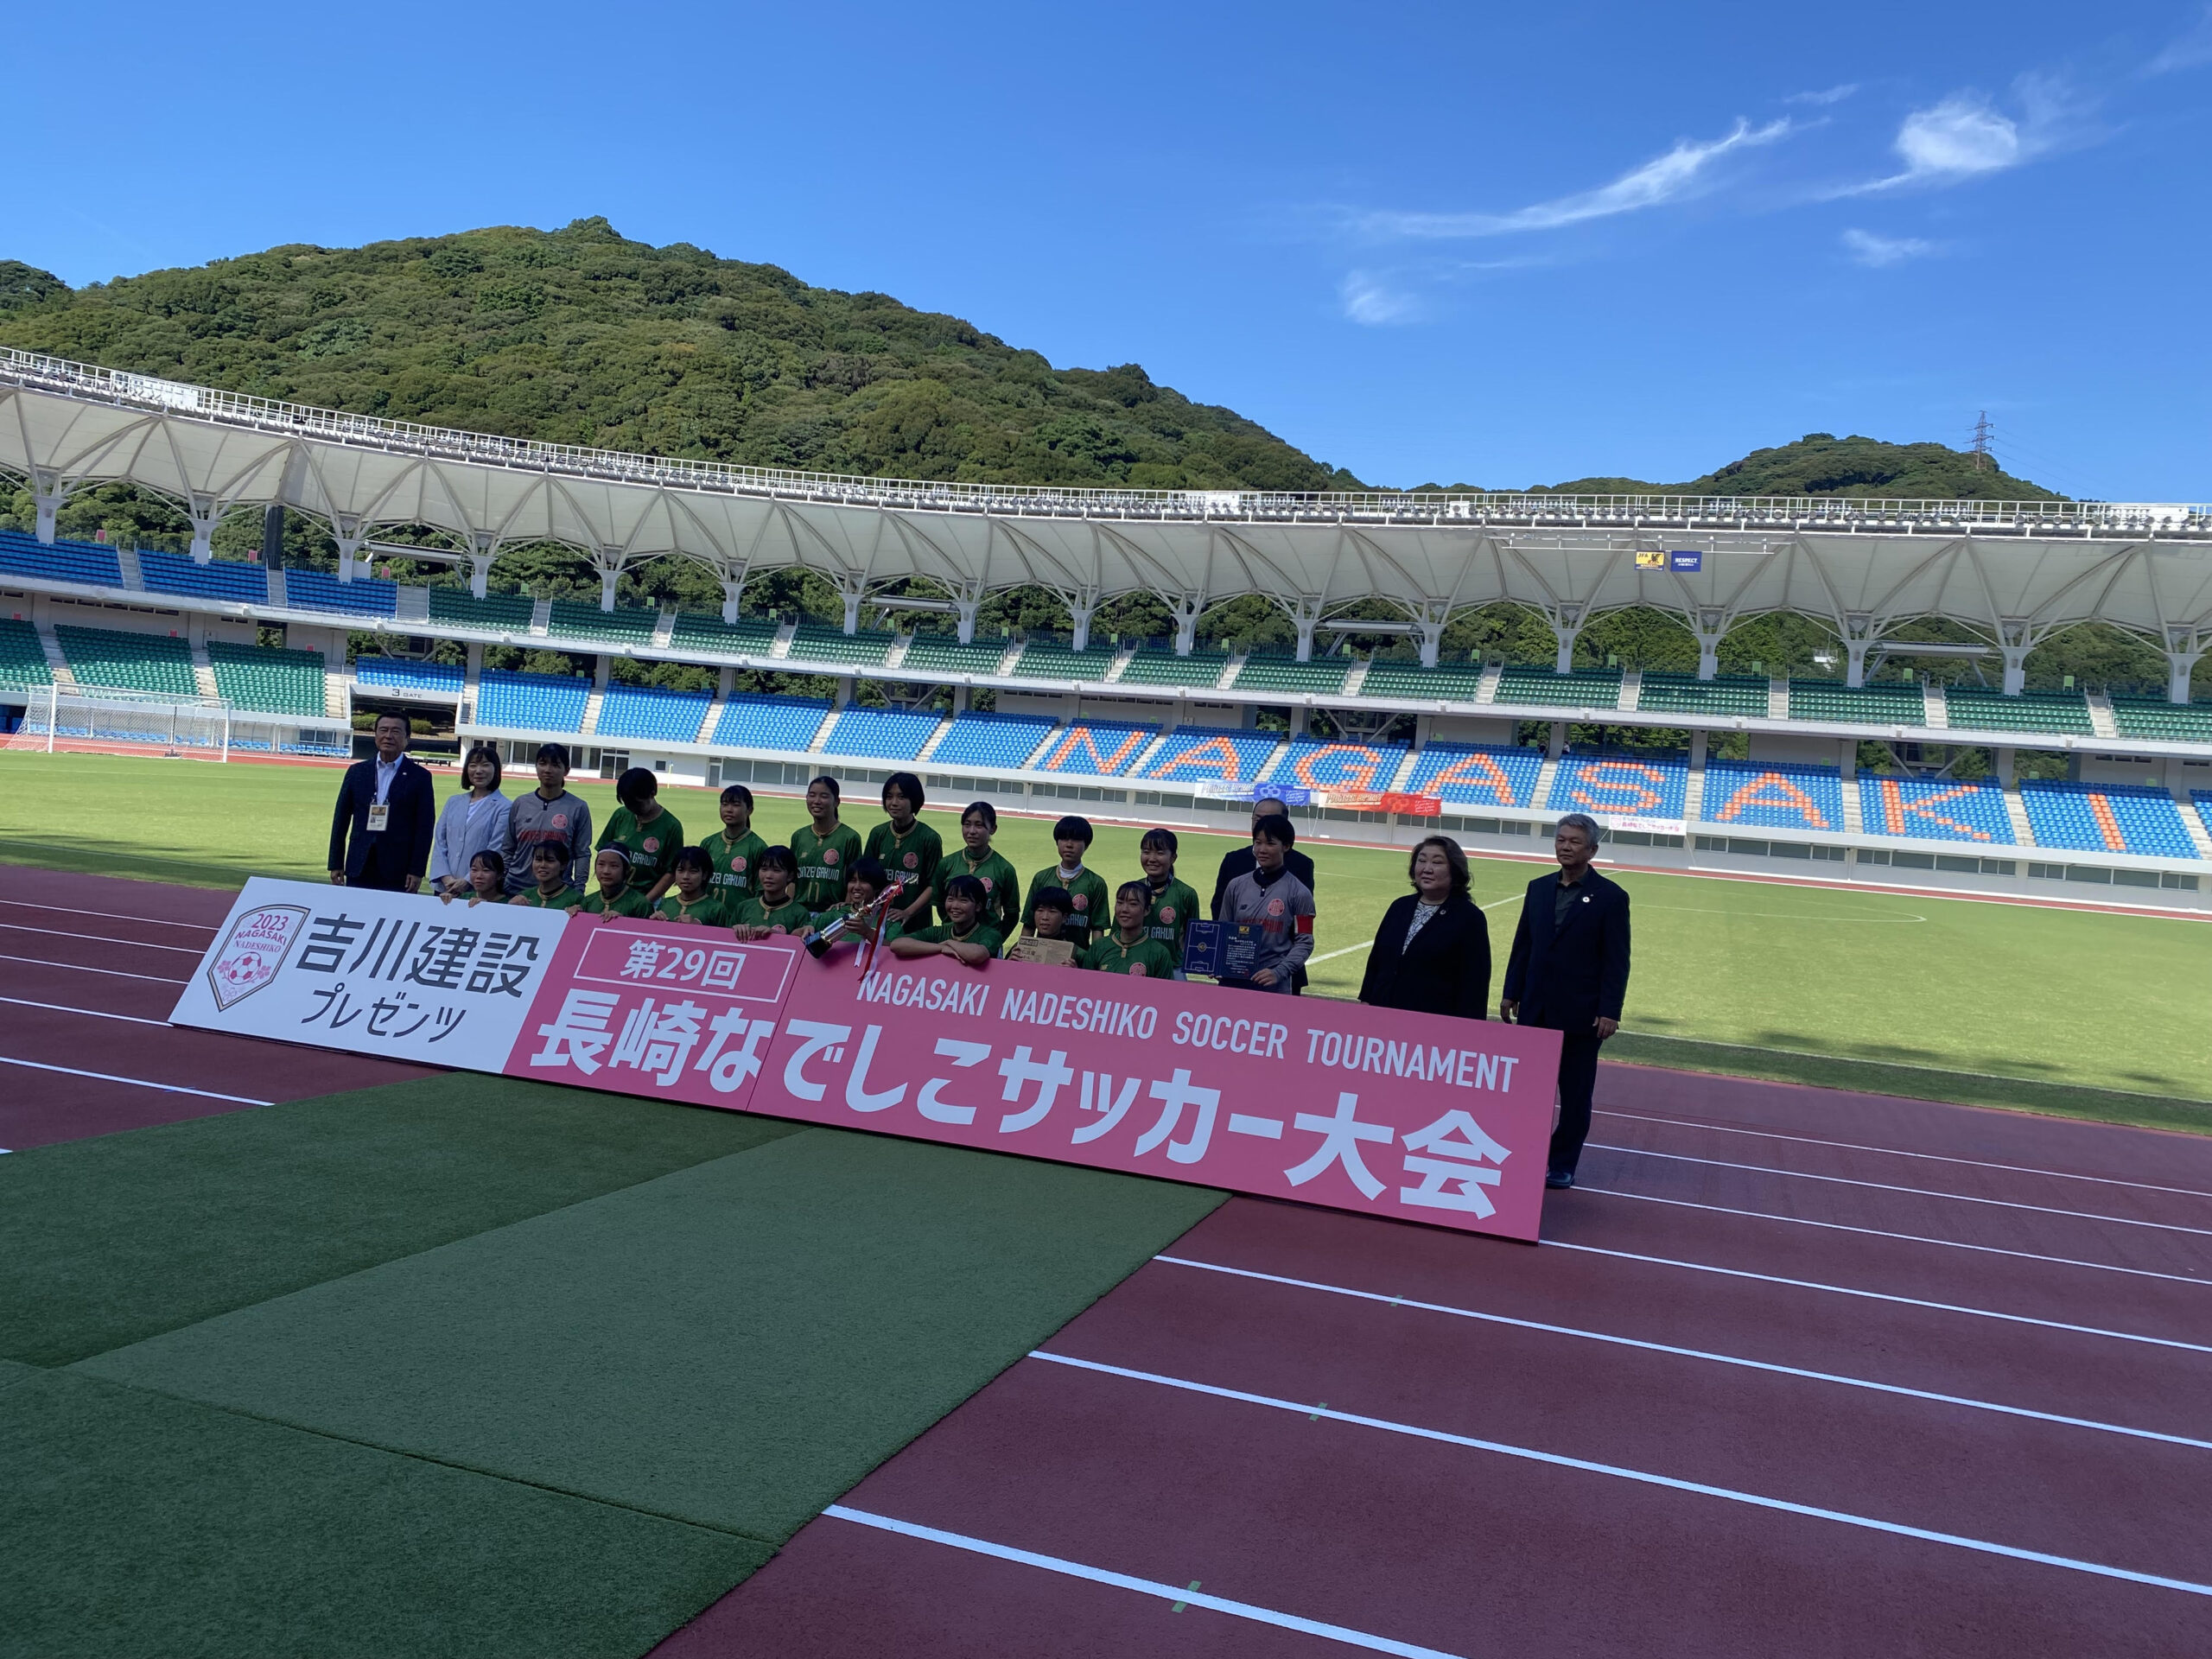 【おしらせ】鎮西学院高等学校 女子サッカー部が第29回長崎なでしこサッカー大会で準優勝に輝きました